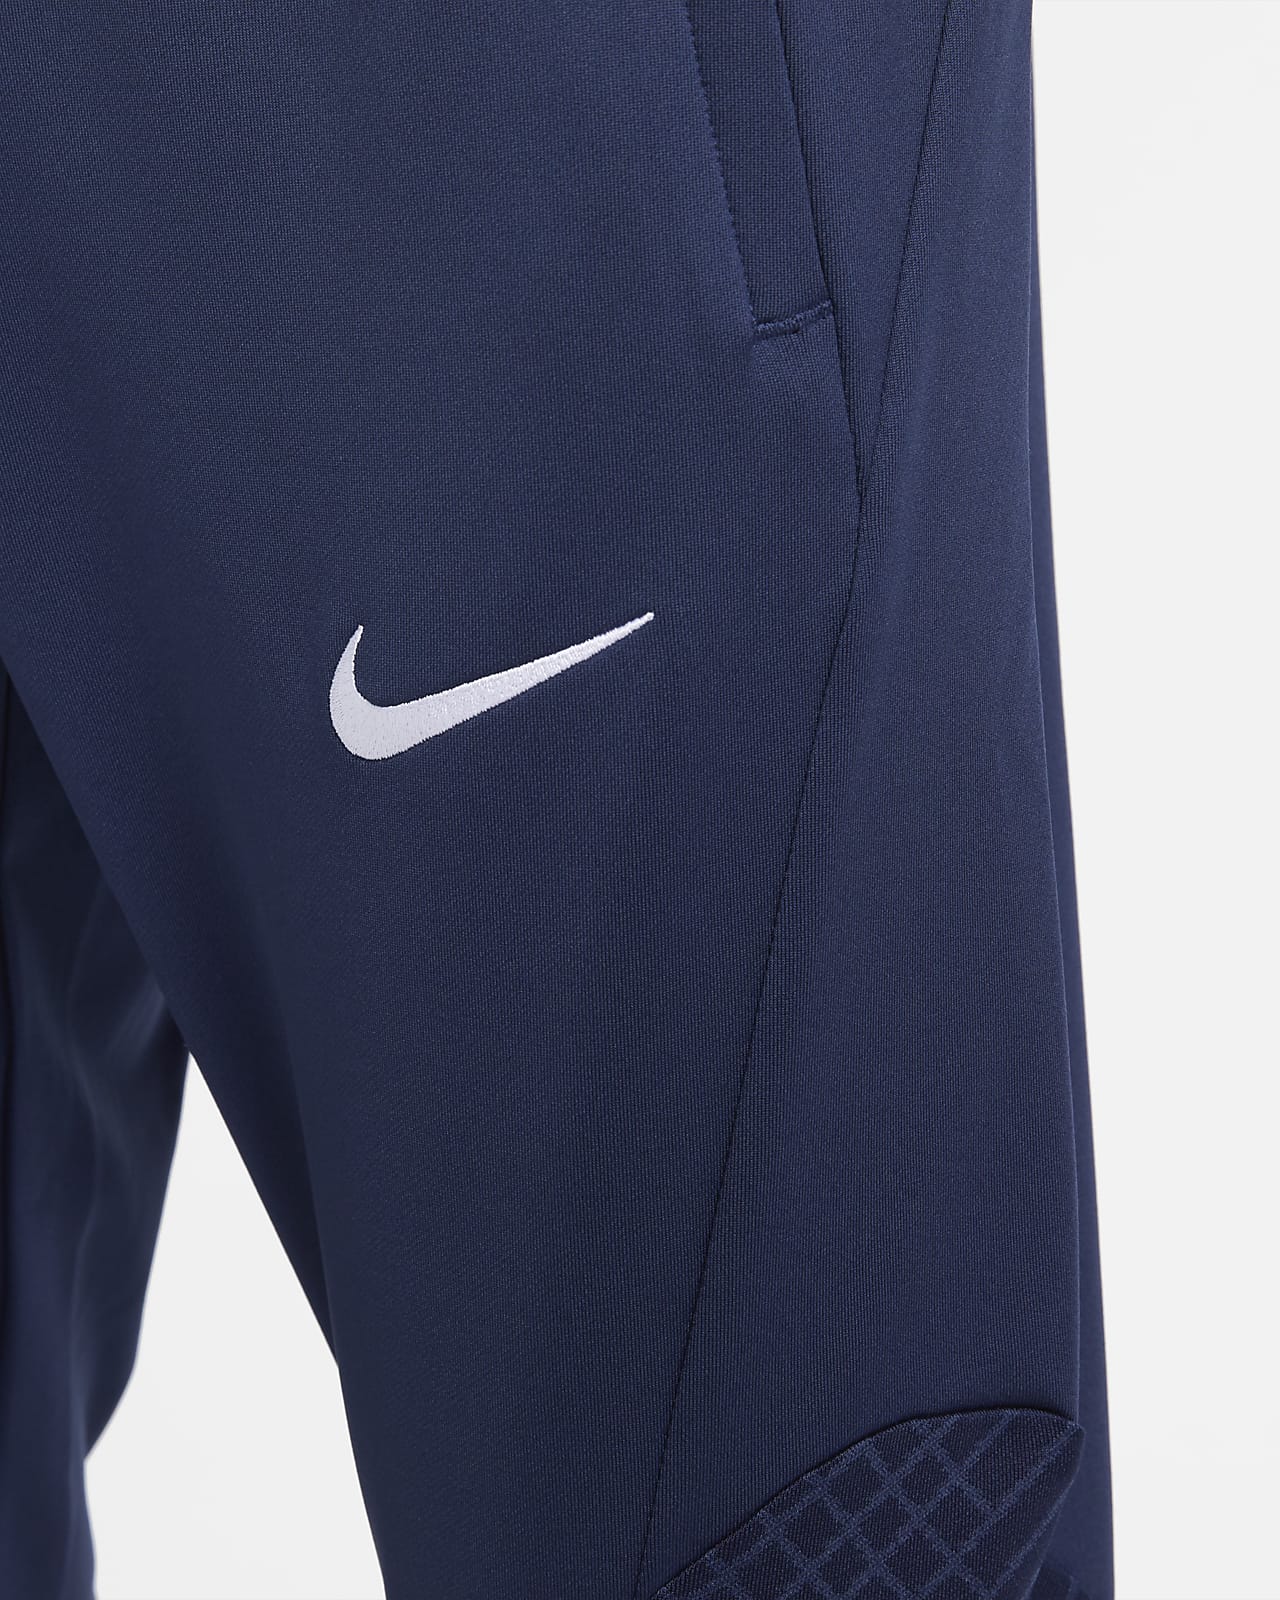 Paris Saint-Germain Strike Men's Nike Dri-FIT Soccer Pants.